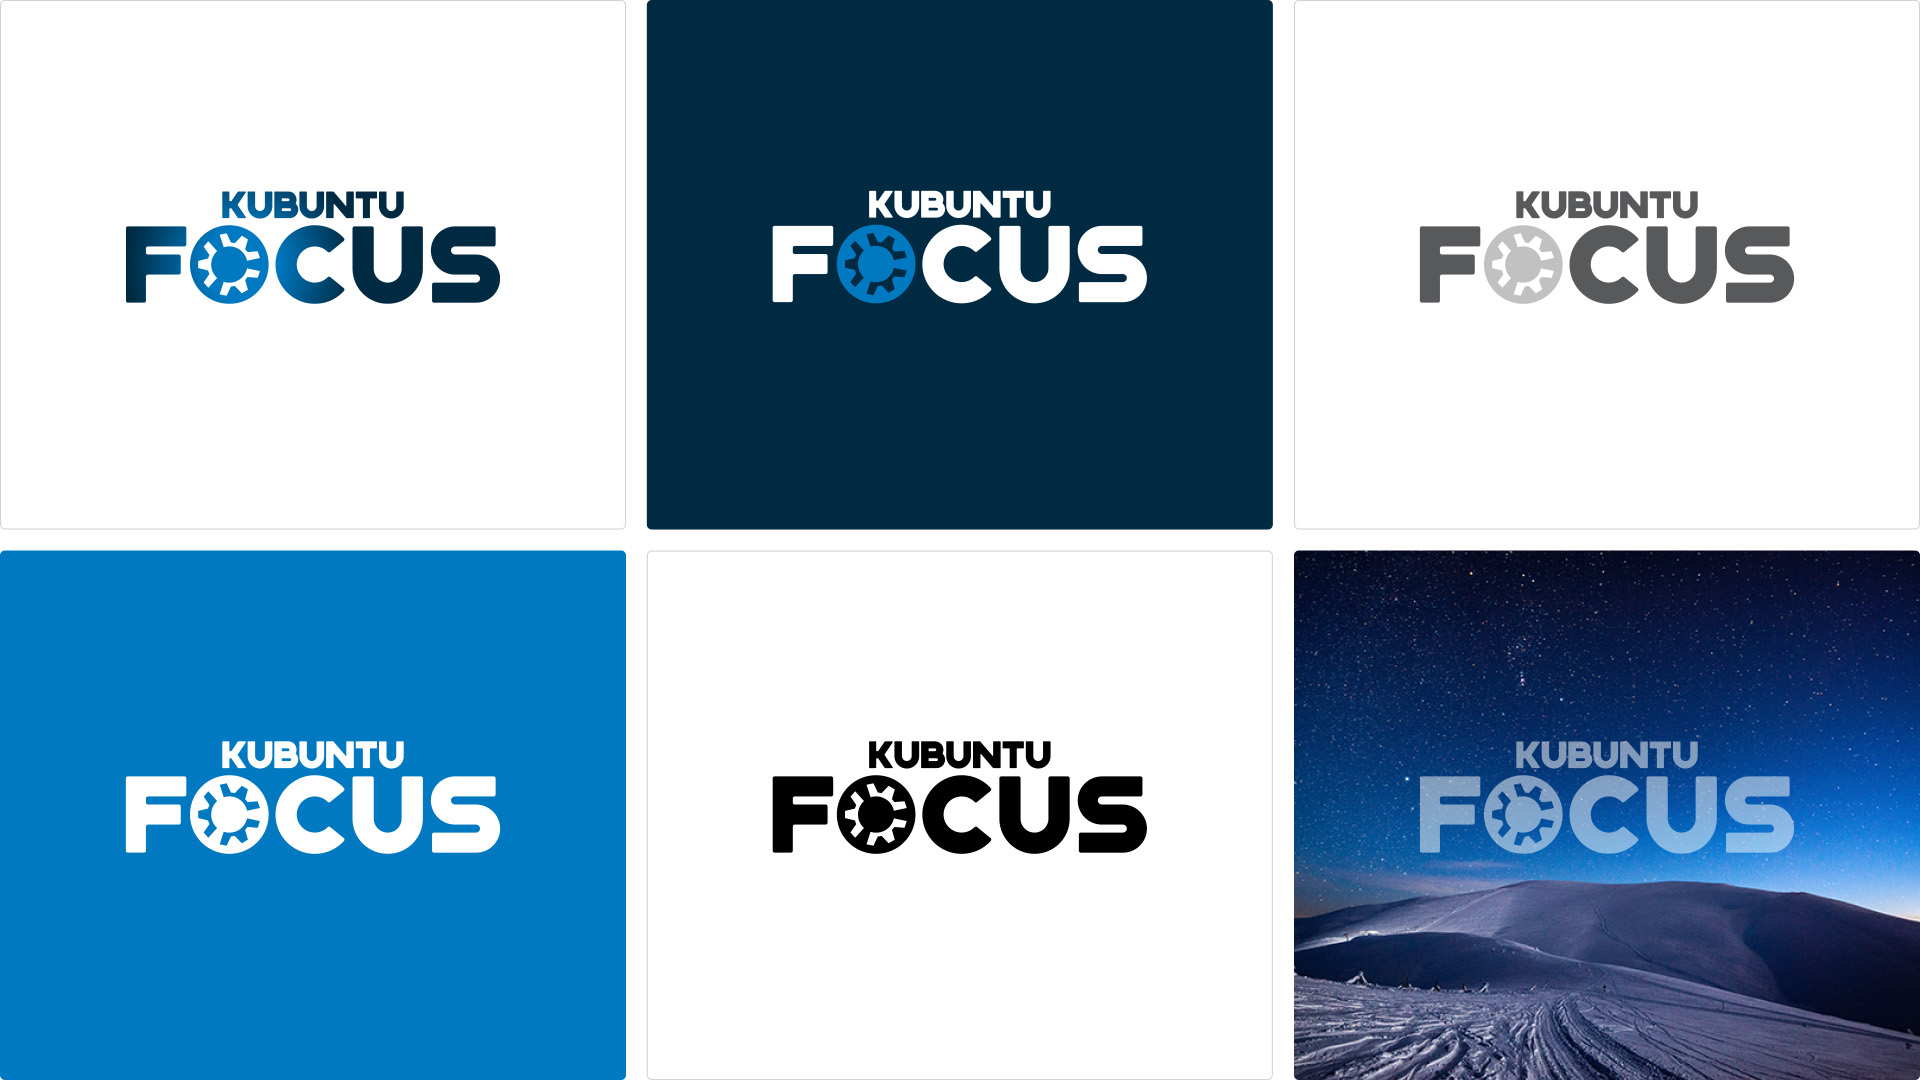 05-kfocus_rebrand-logo_variations